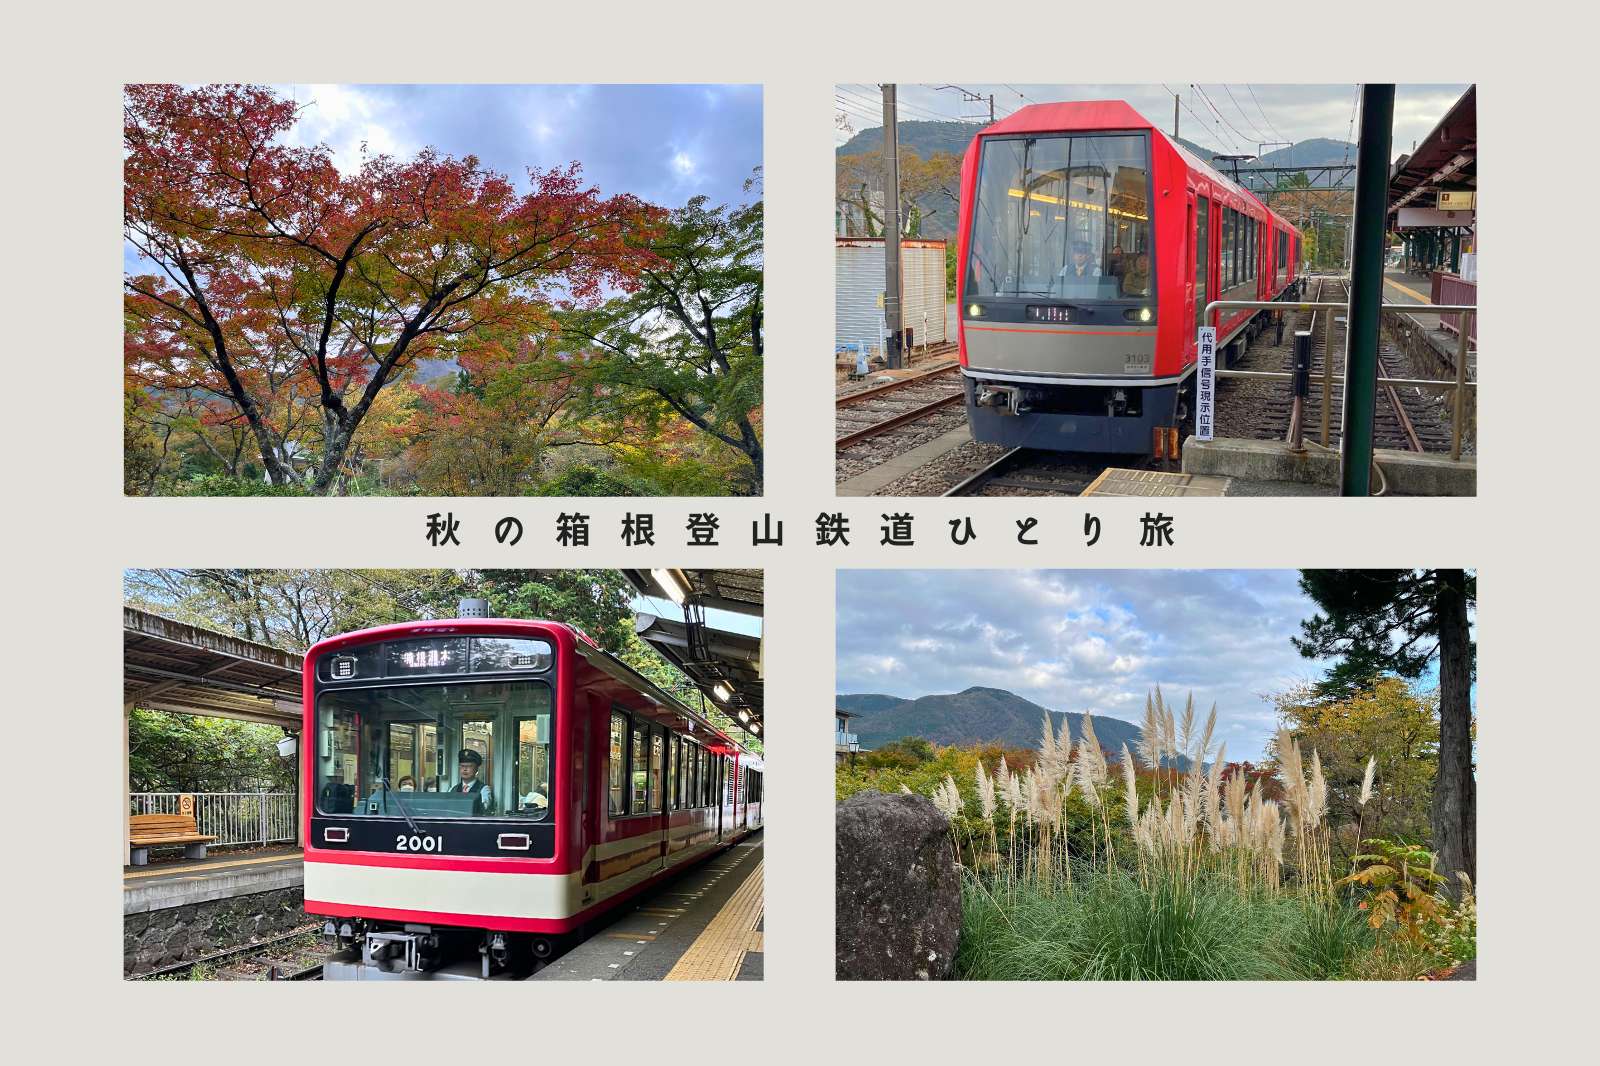 【箱根登山鉄道ぶらり途中下車の旅】秋の箱根観光モデルコース